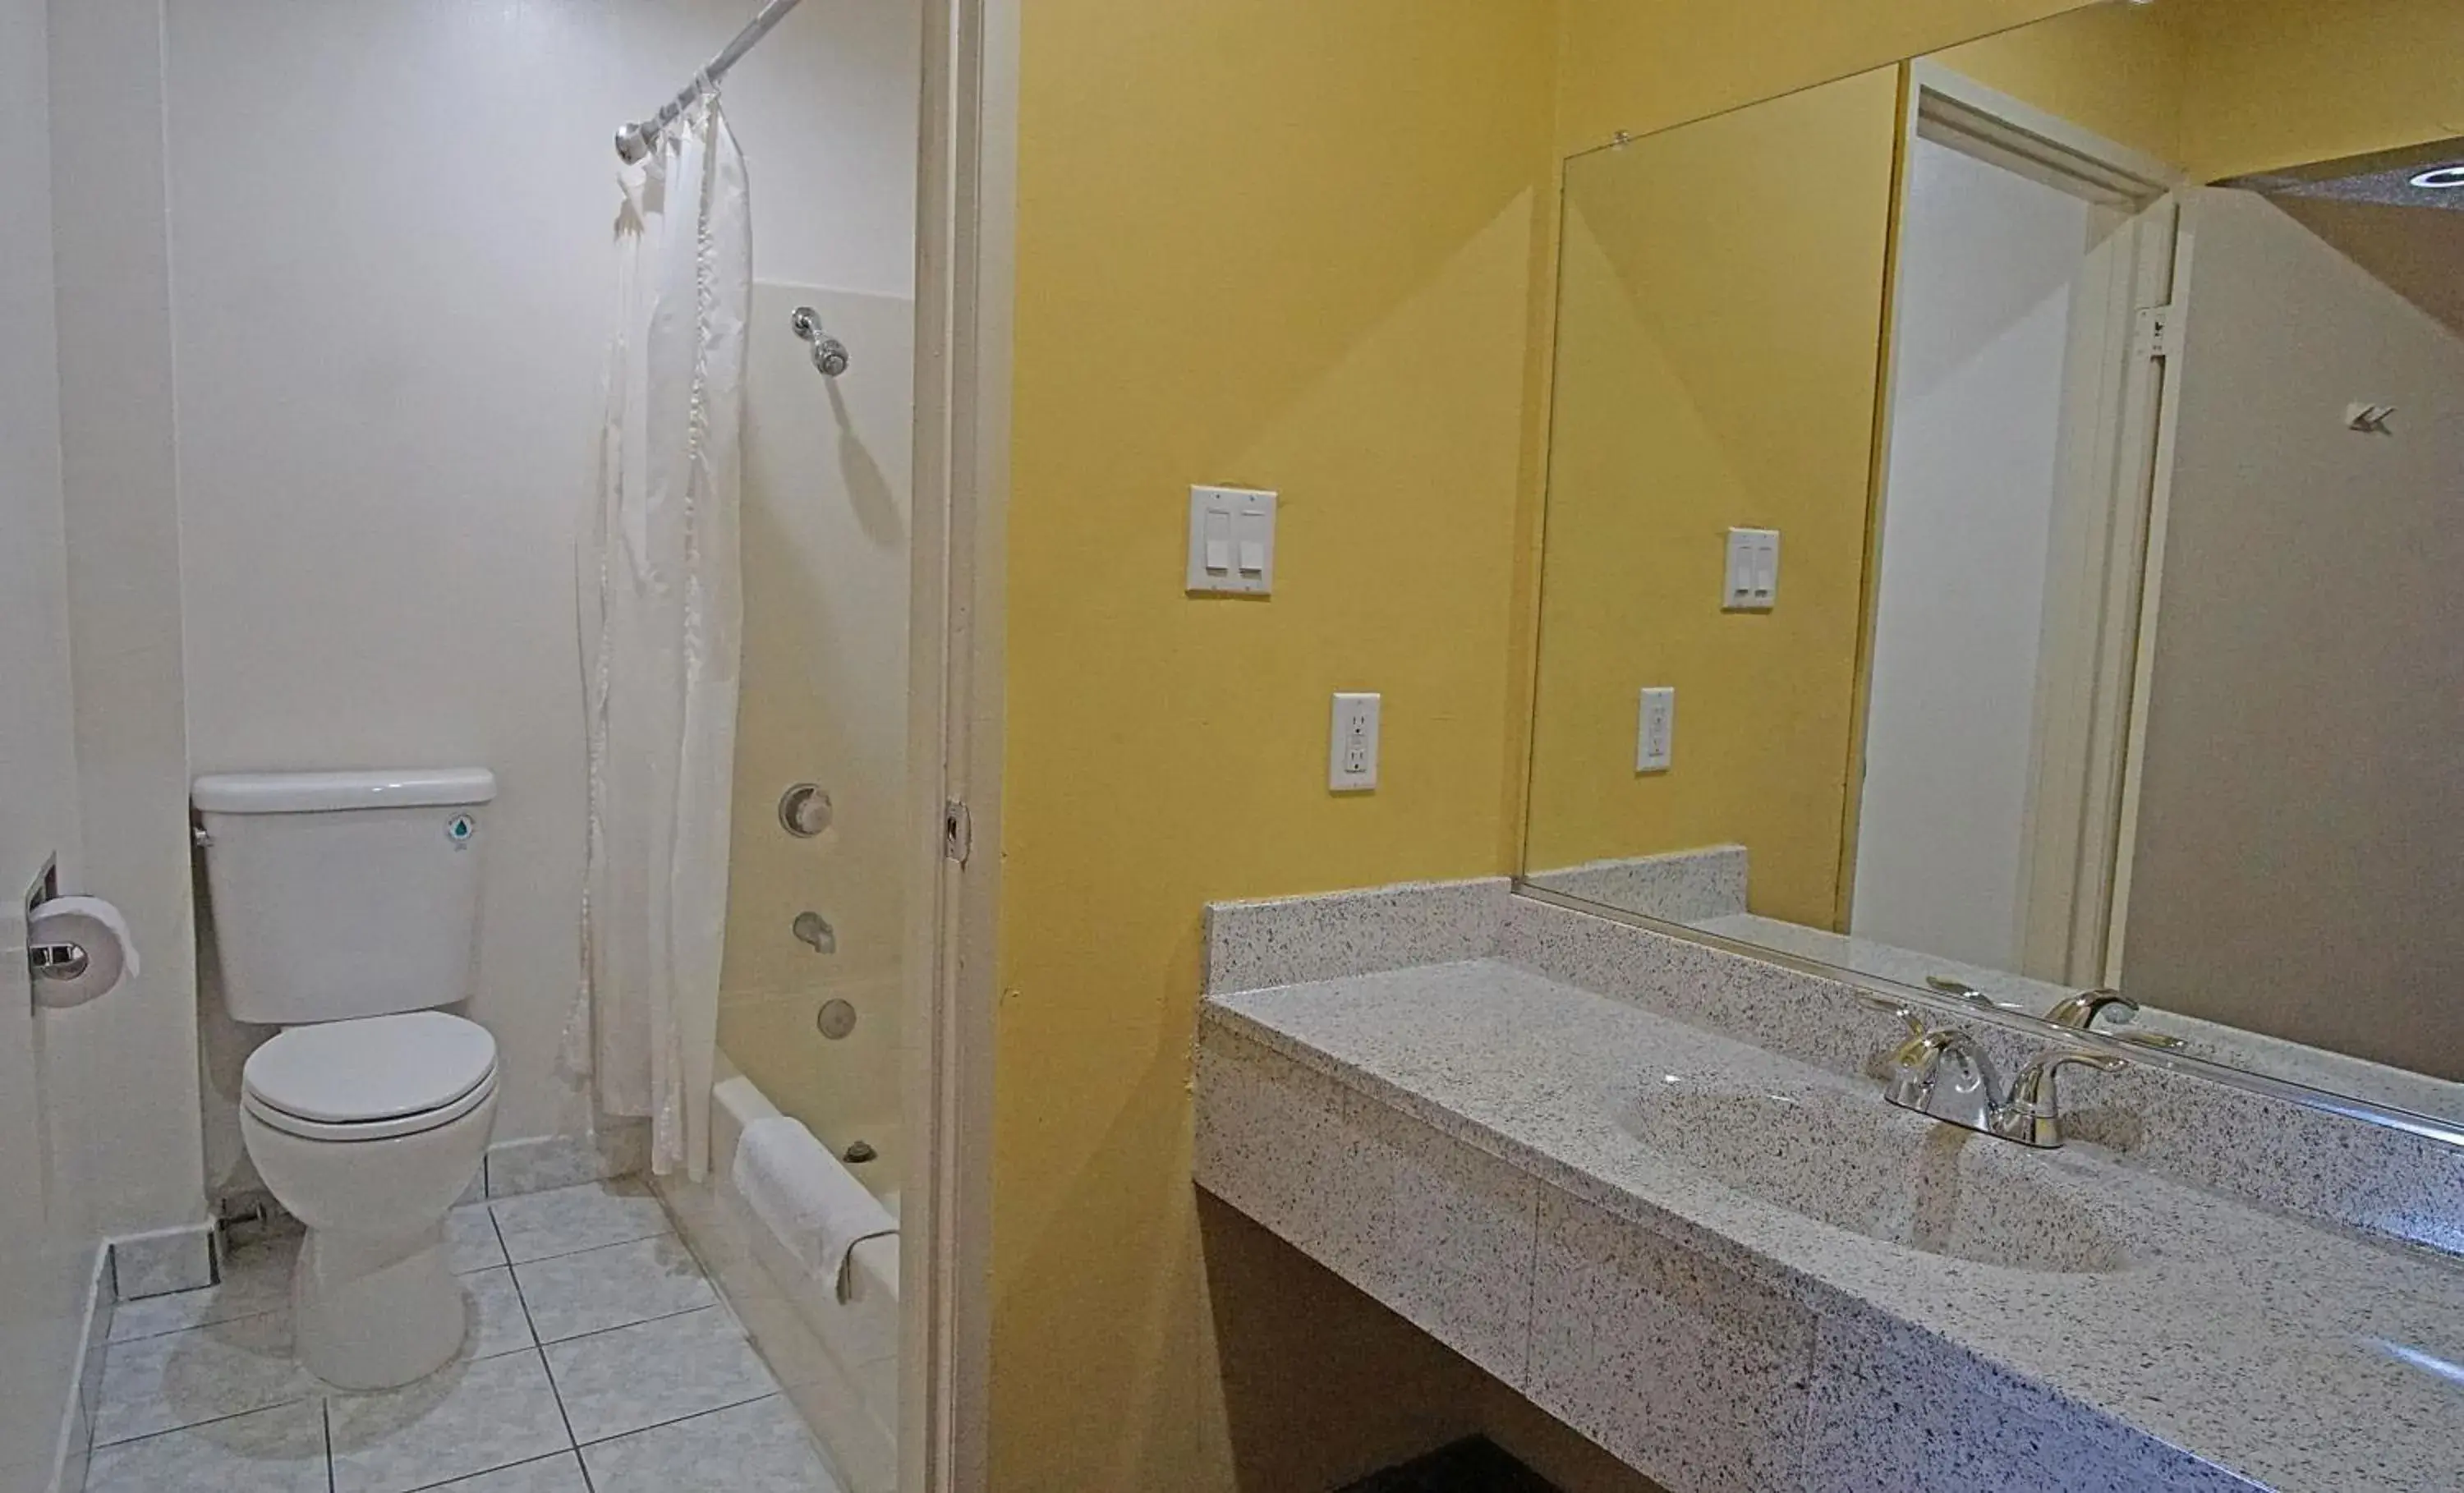 Bathroom in Los Angeles Inn & Suites - LAX